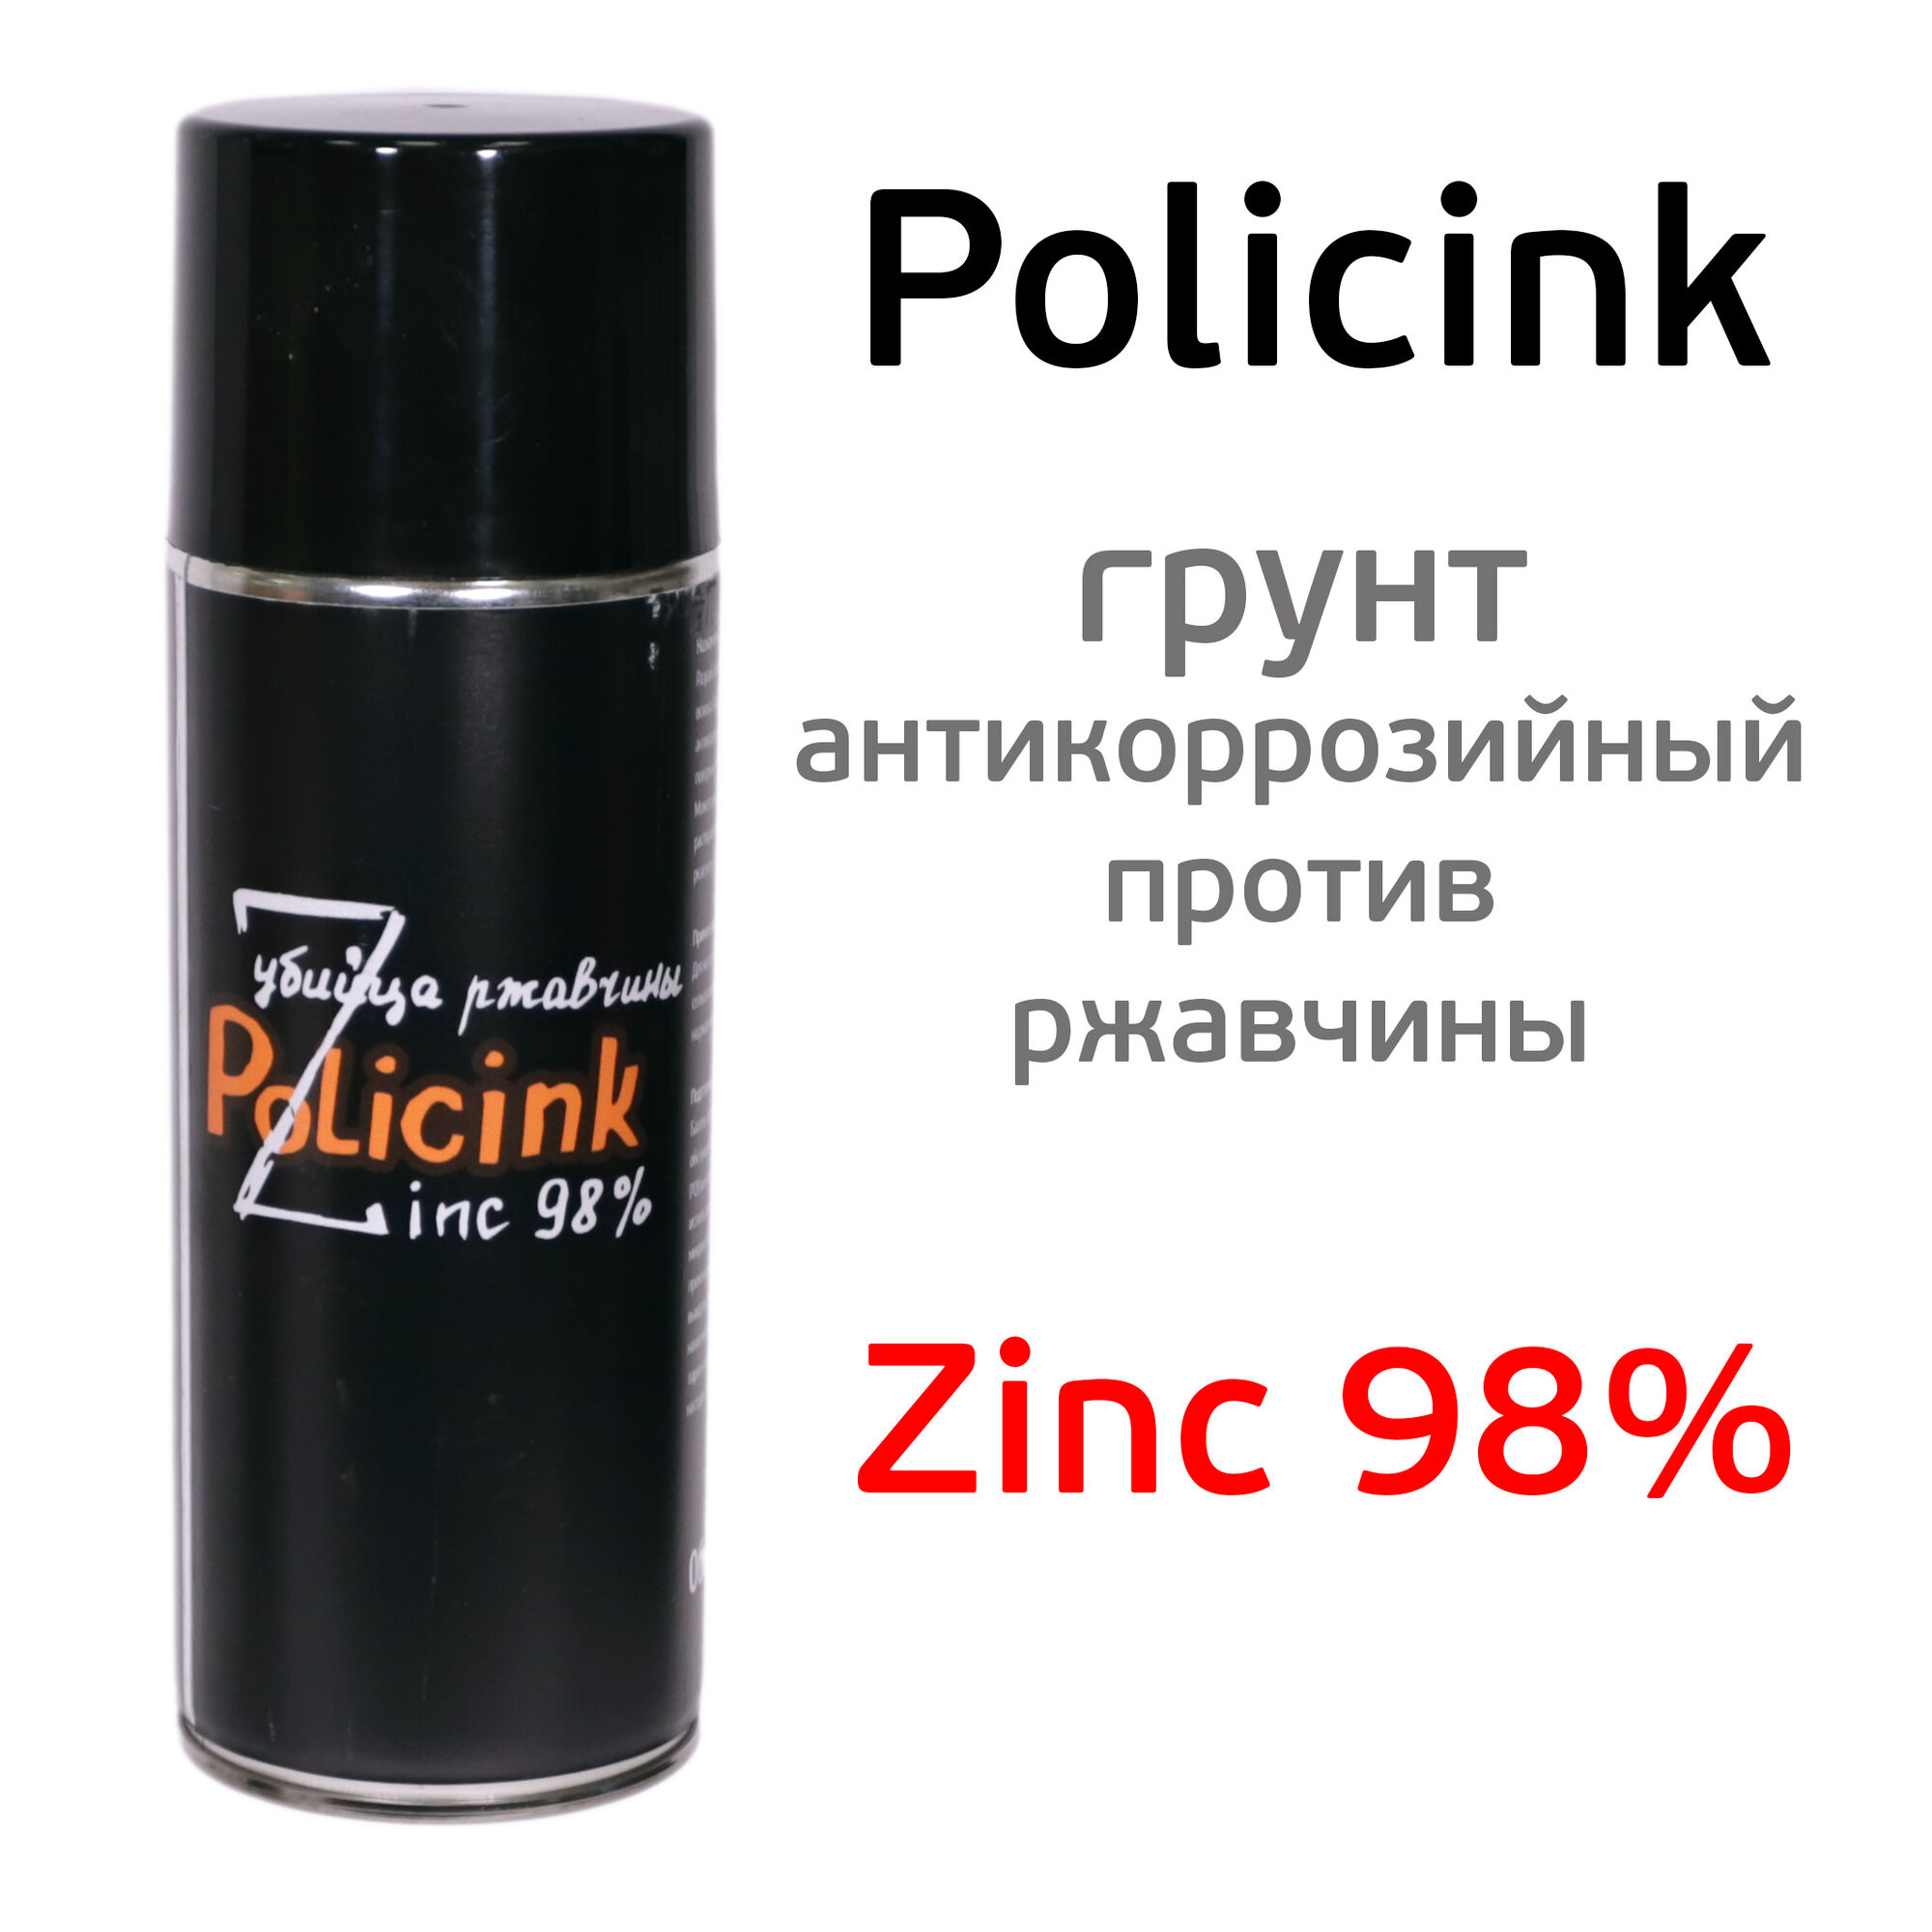 Цинк-спрей Policink антикоррозионный (400мл) полиуретановый грунт (убийца ржавчины) Zinc 98%